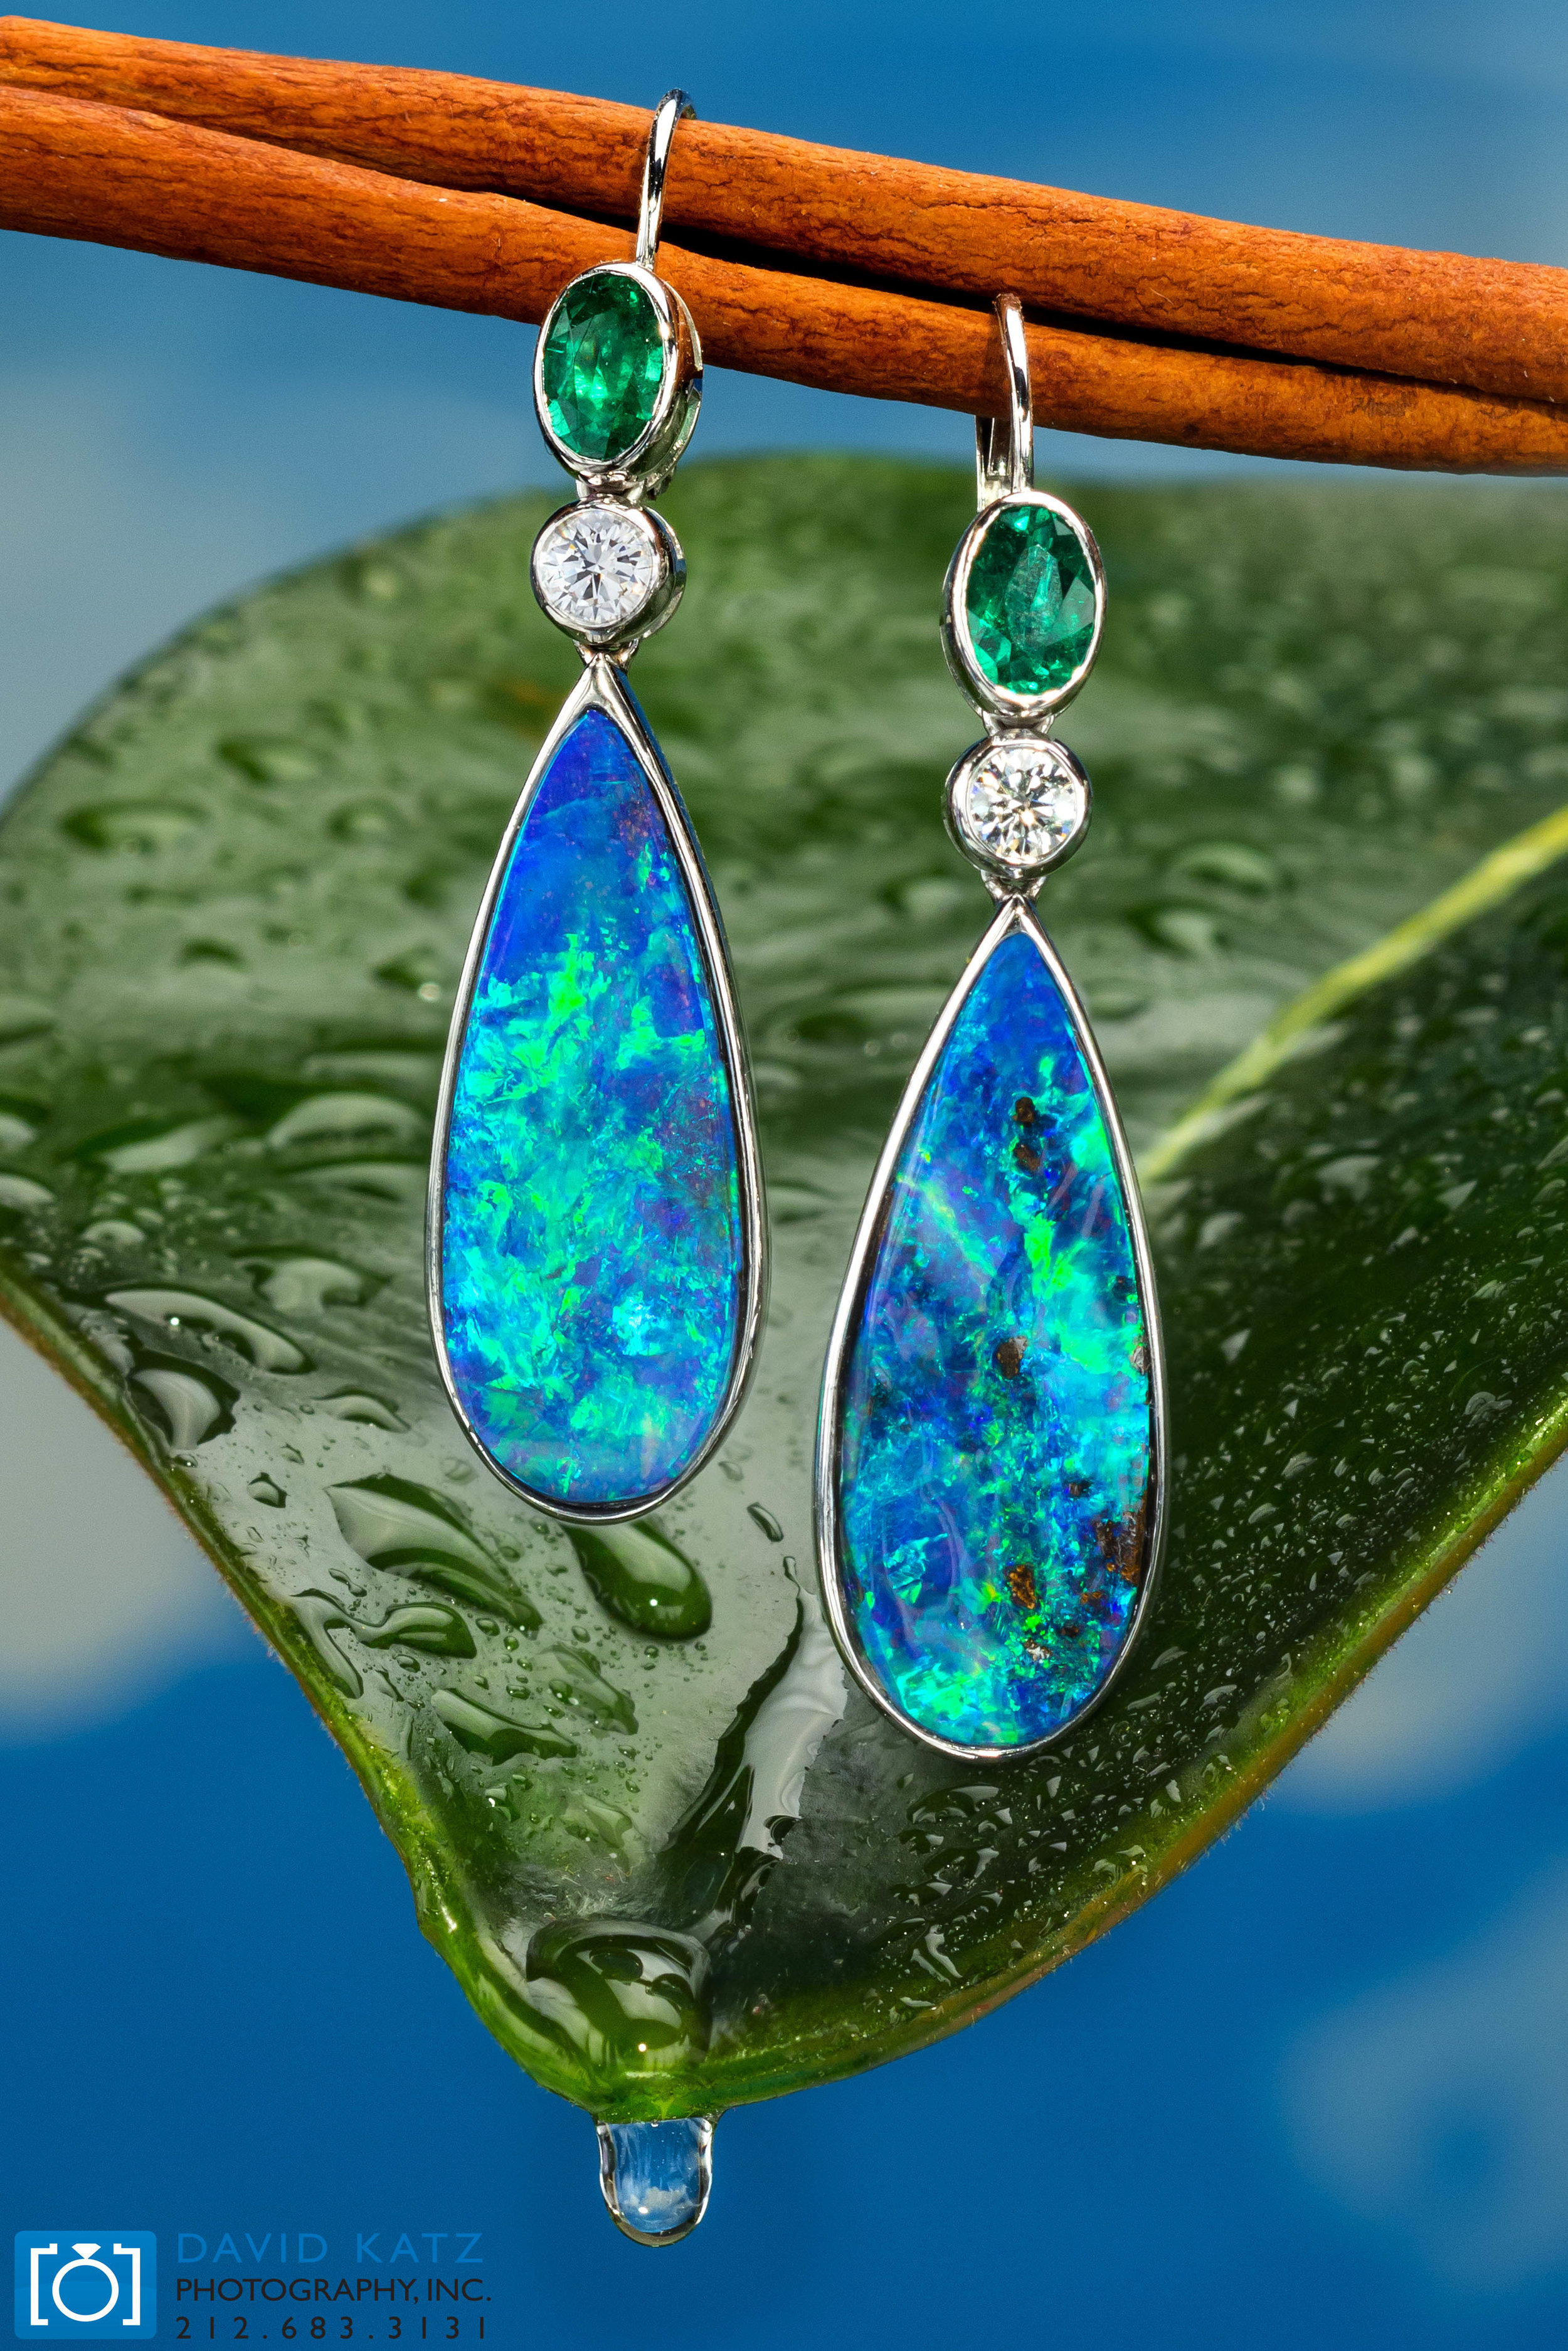 Opal earrings on Leaf with water drop wet_NEWLOGO.jpg